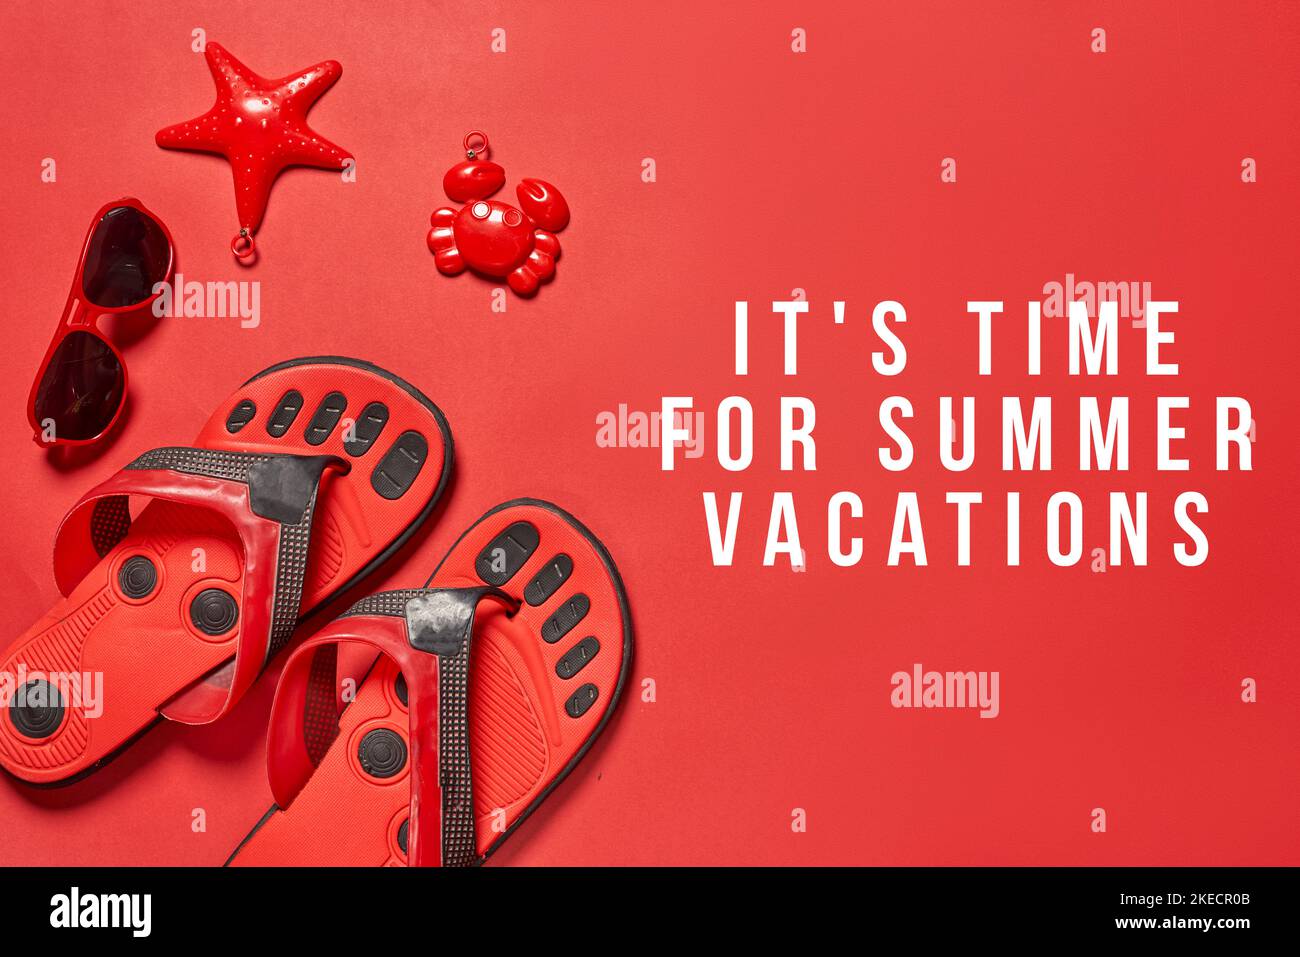 Rote Flipflops mit den Worten, es ist Zeit für Sommerferien, die oben und unten in Weiß geschrieben sind Stockfoto